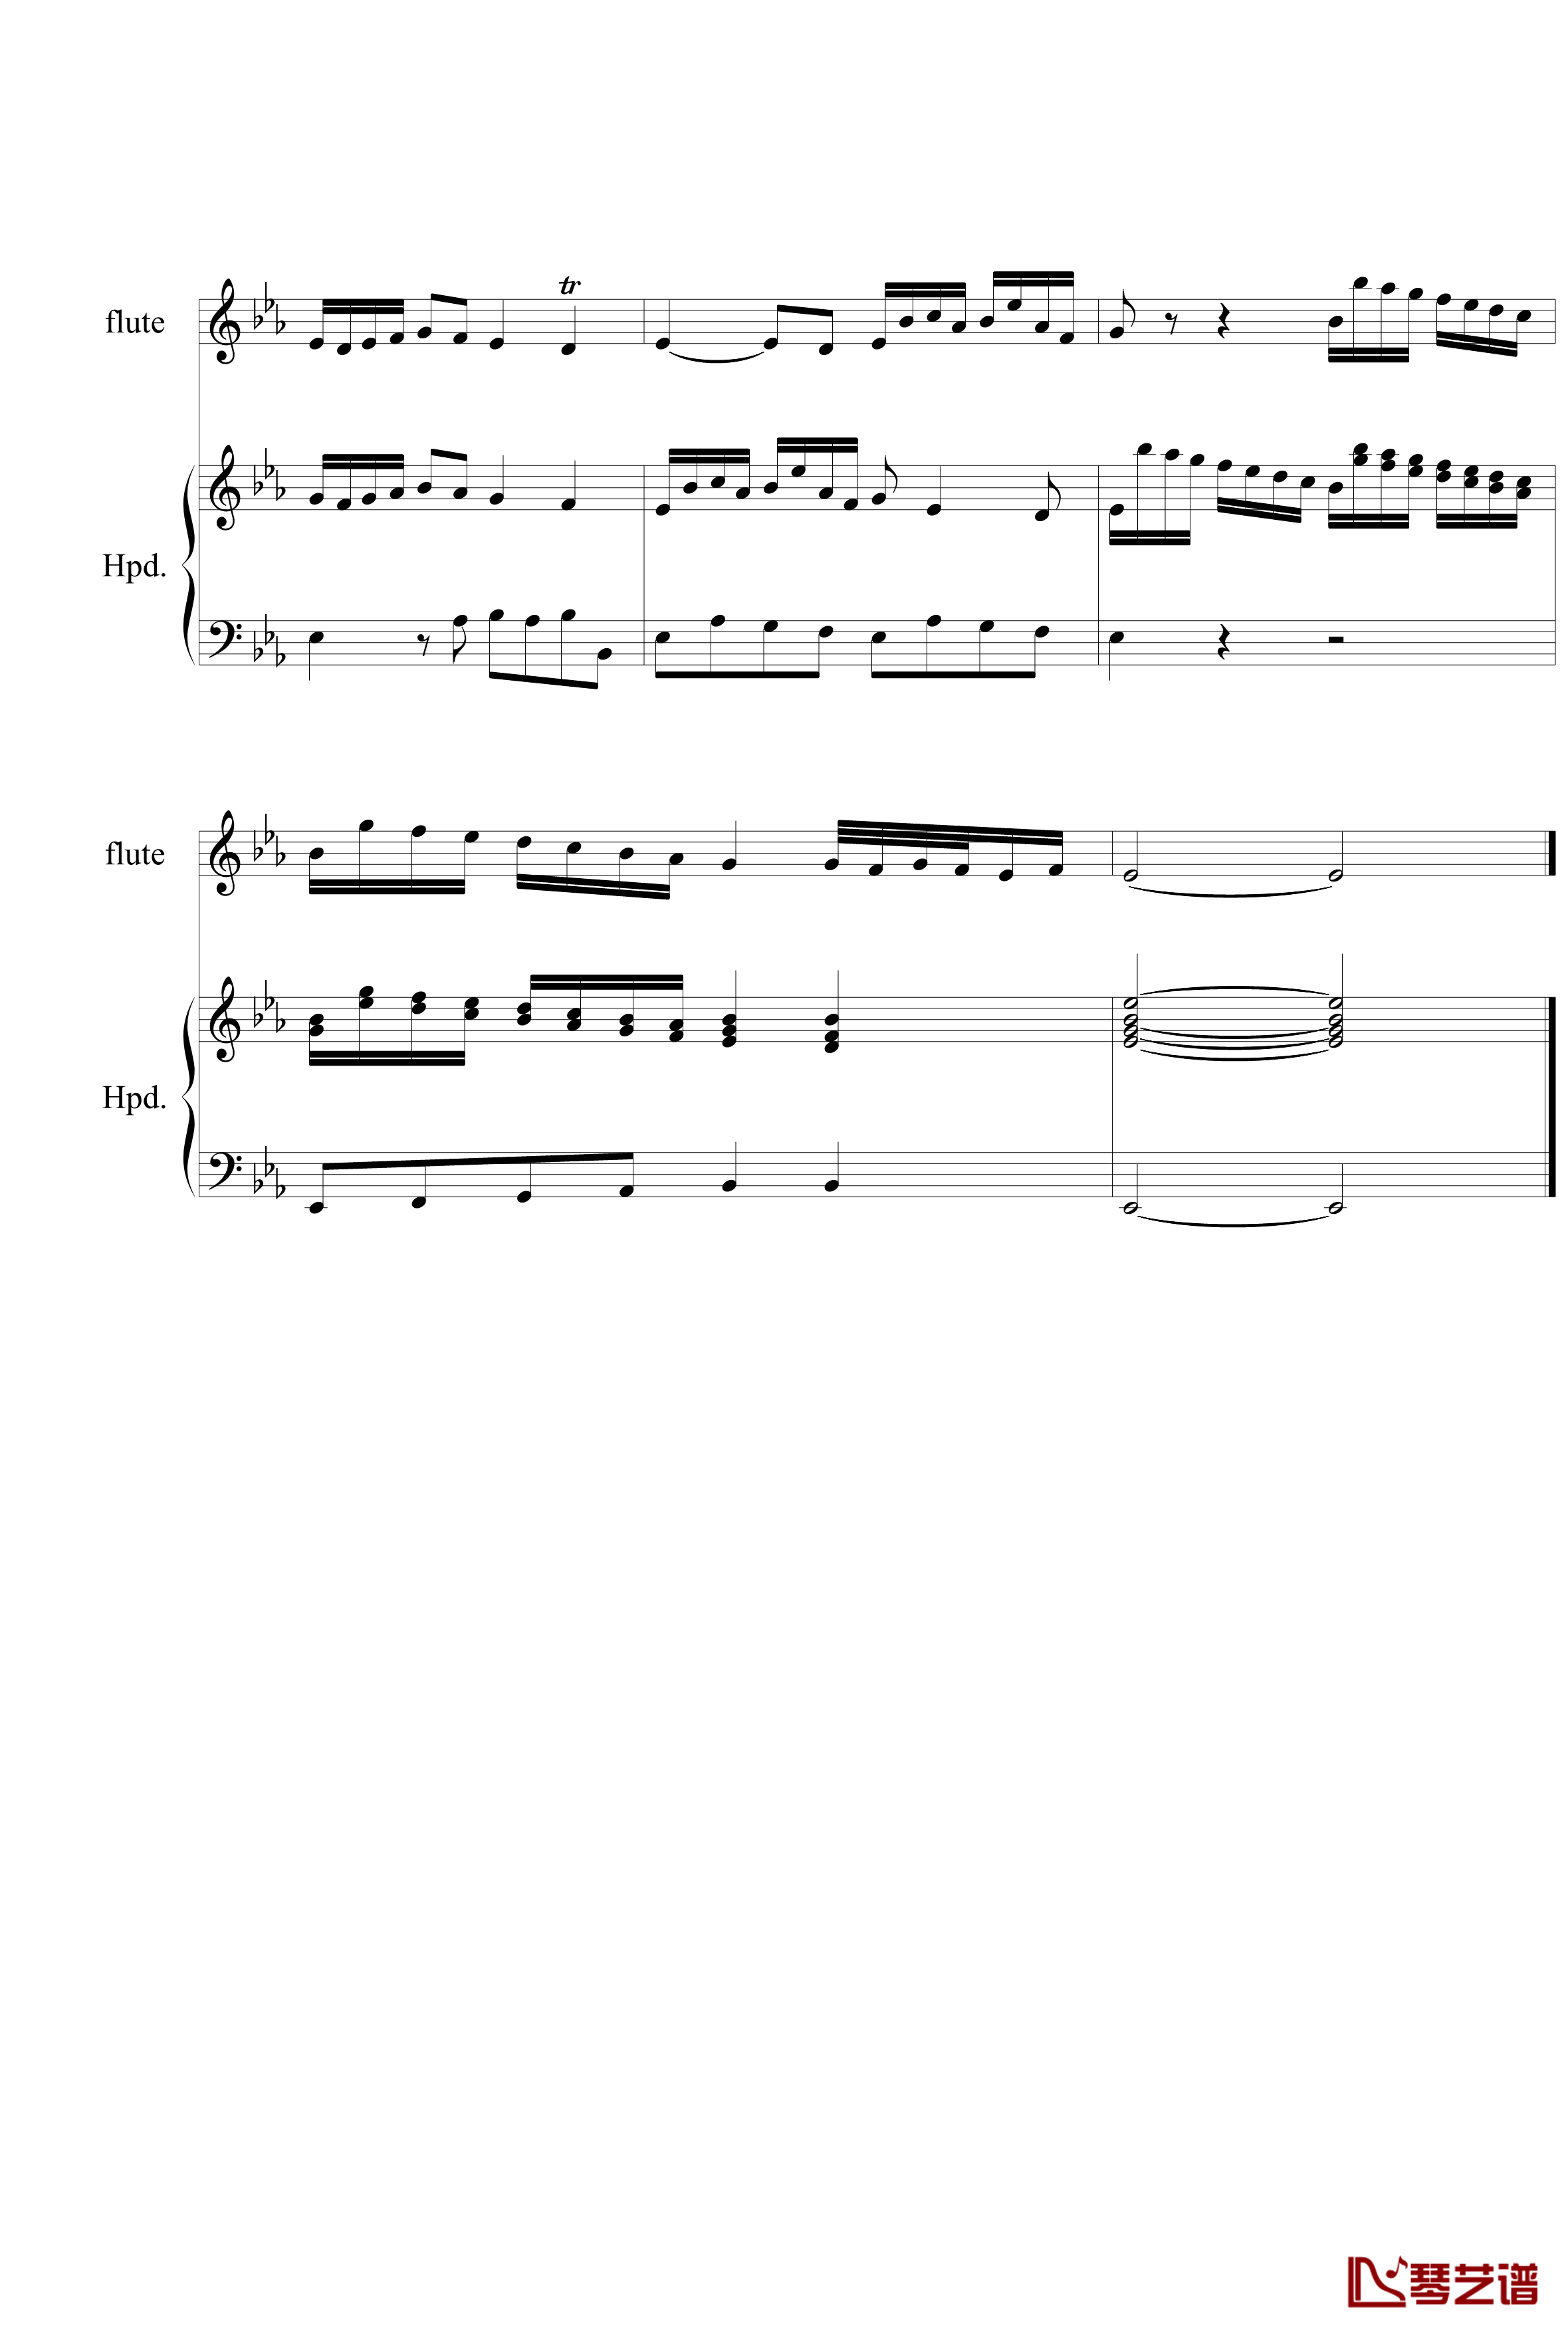 羽管键琴协奏曲BWV1031第一乐章钢琴谱-巴赫-P.E.Bach8